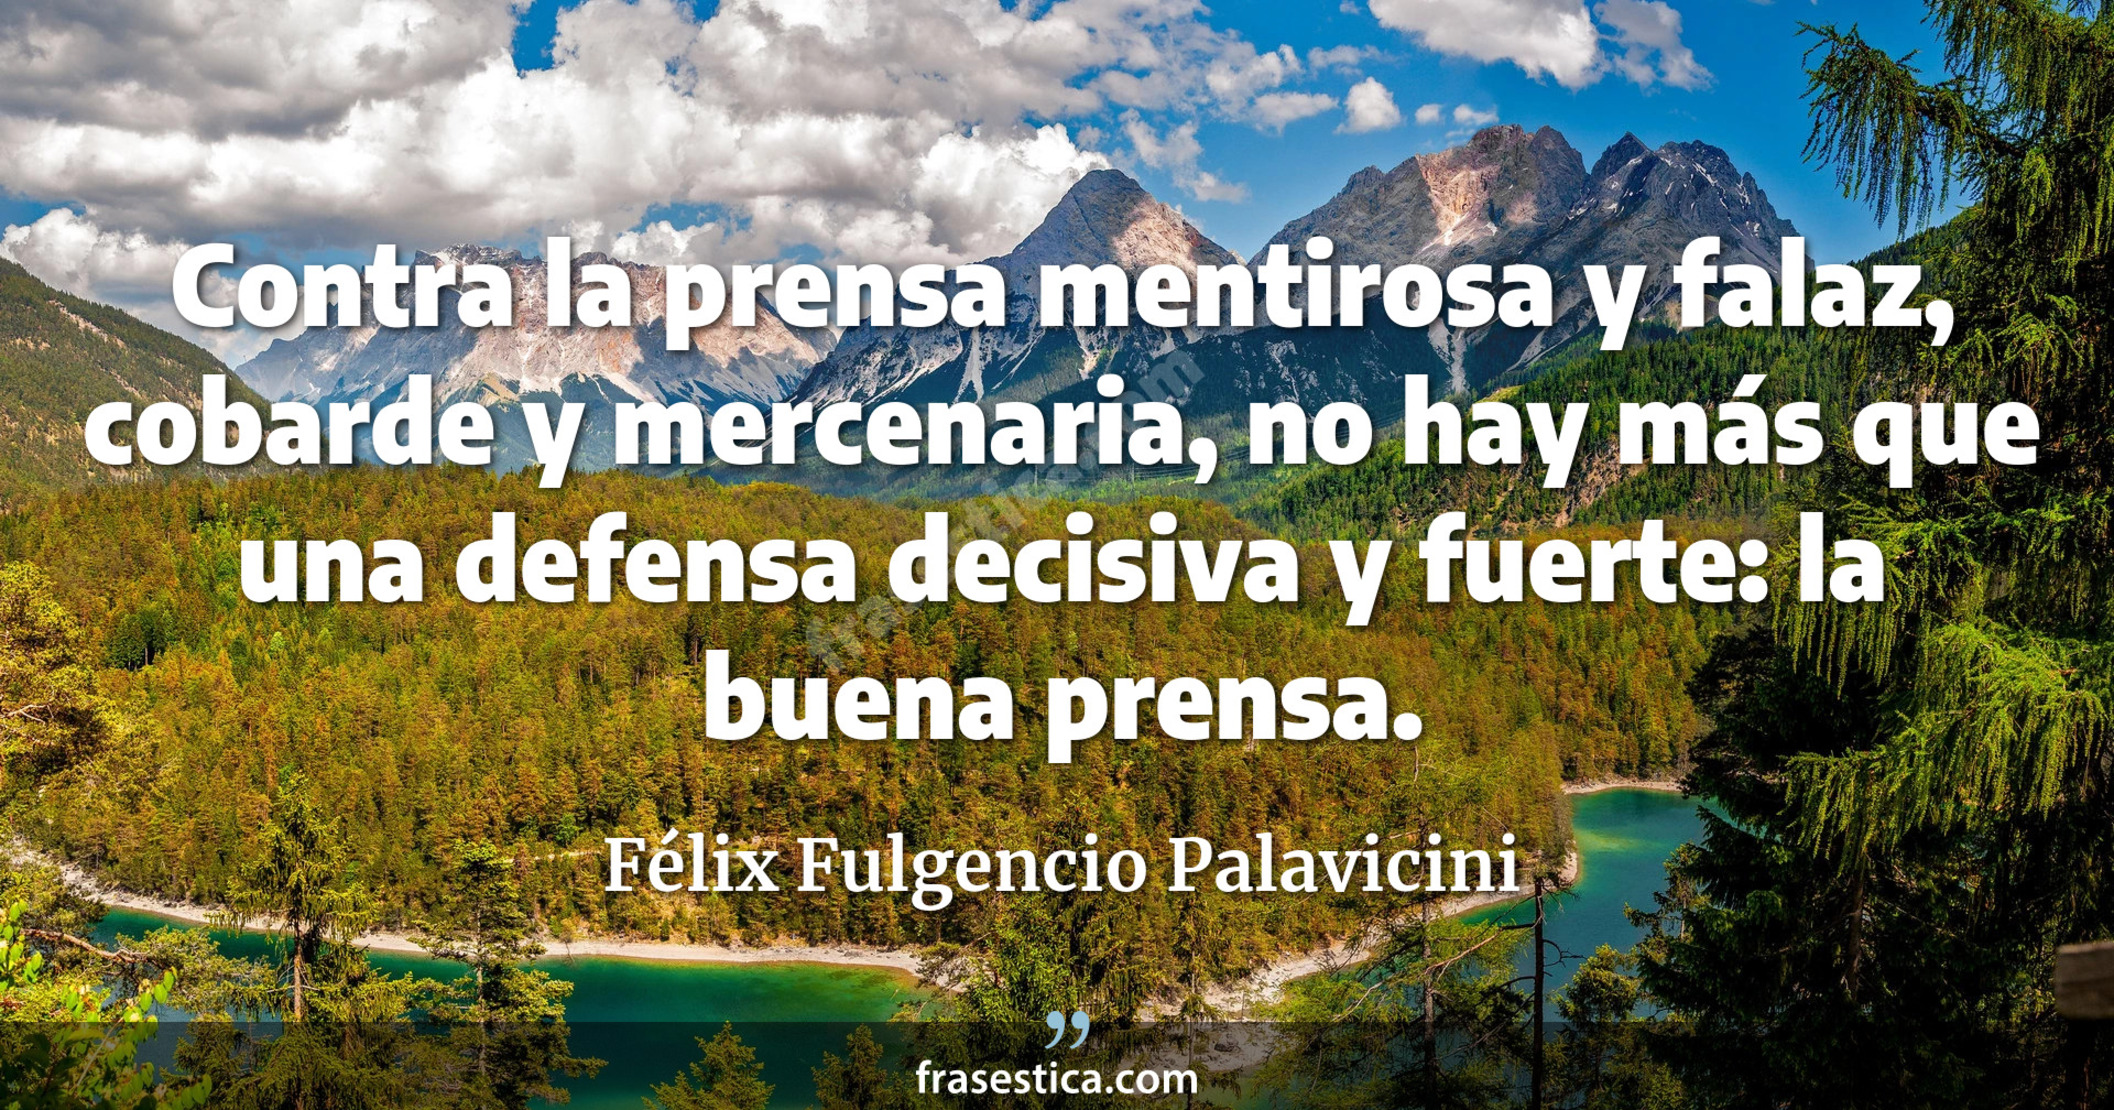 Contra la prensa mentirosa y falaz, cobarde y mercenaria, no hay más que una defensa decisiva y fuerte: la buena prensa. - Félix Fulgencio Palavicini